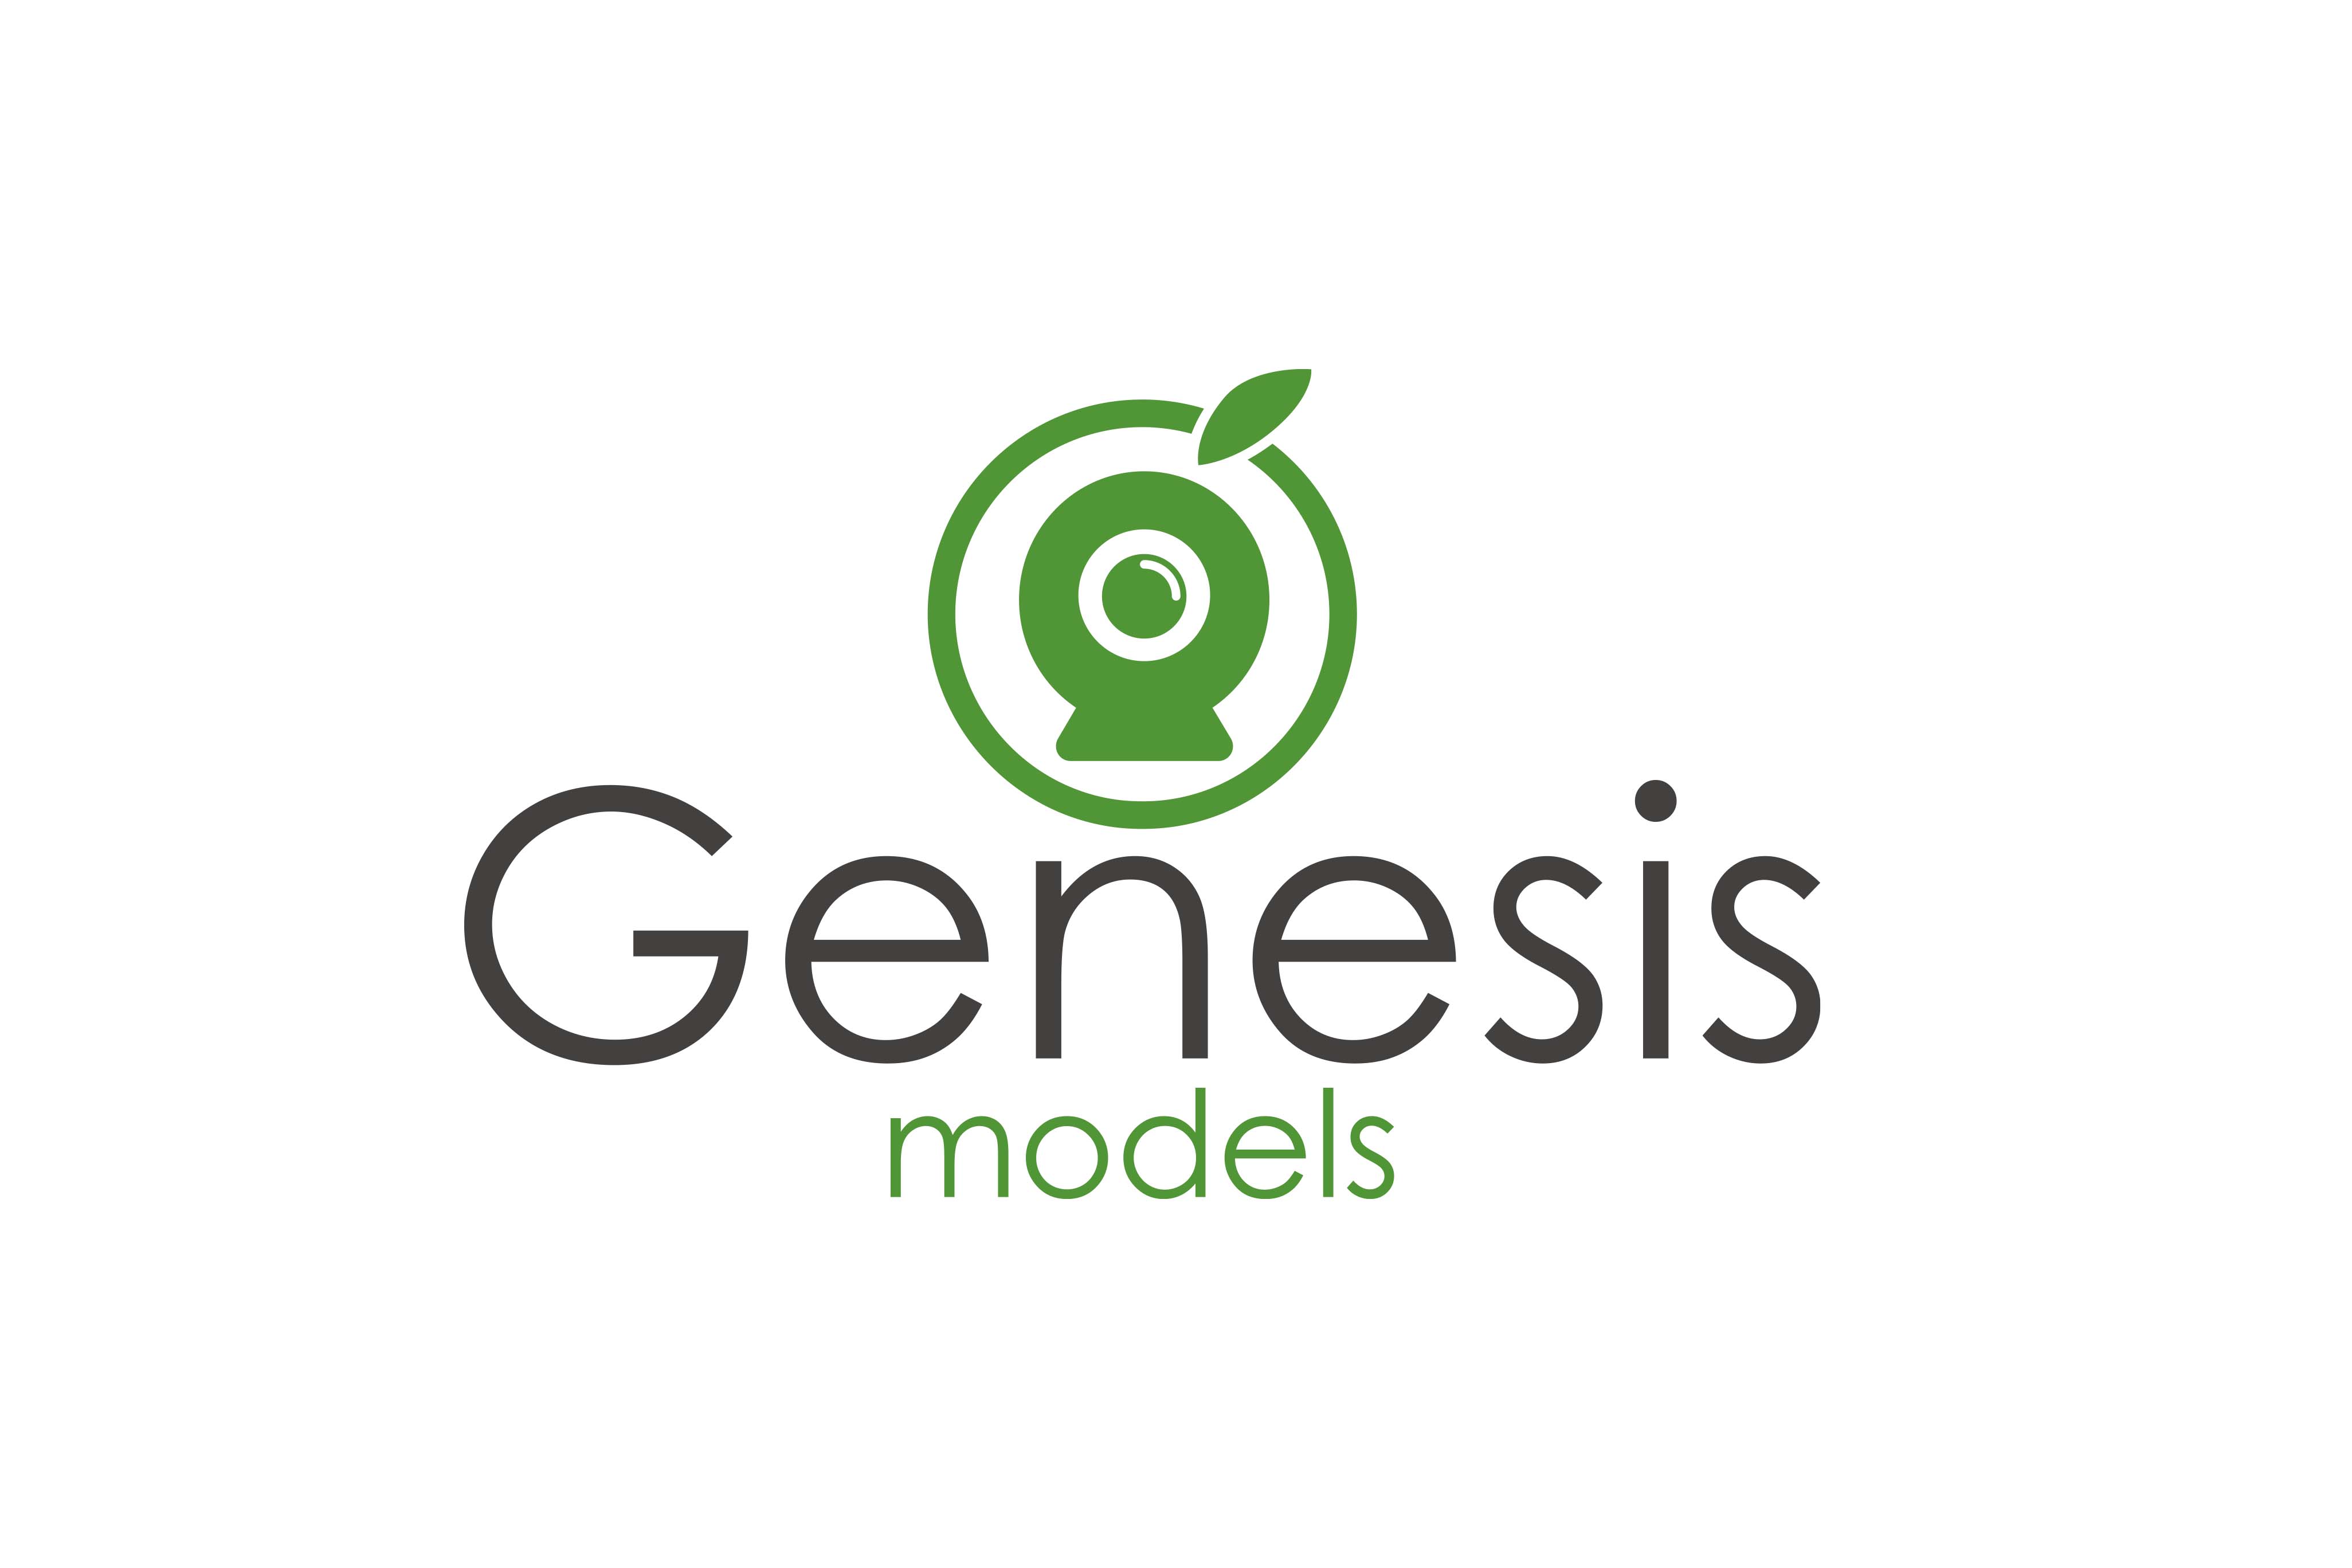 Genesismodels